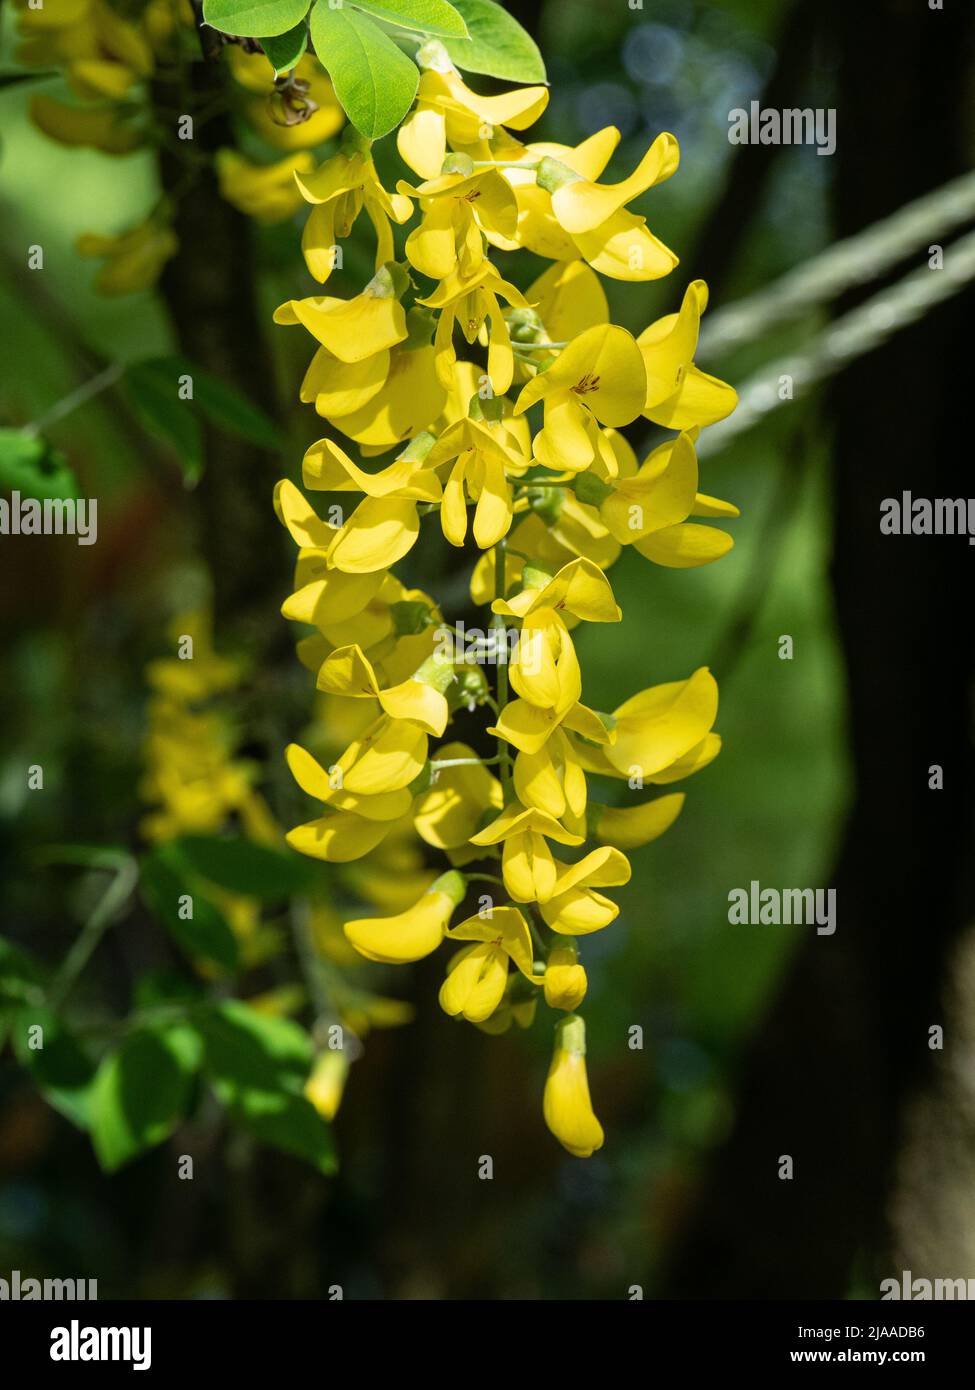 Un primer plano de las flores colgadas de color amarillo brillante del popular pero venenoso árbol de lluvia Laburnum o Golden Foto de stock